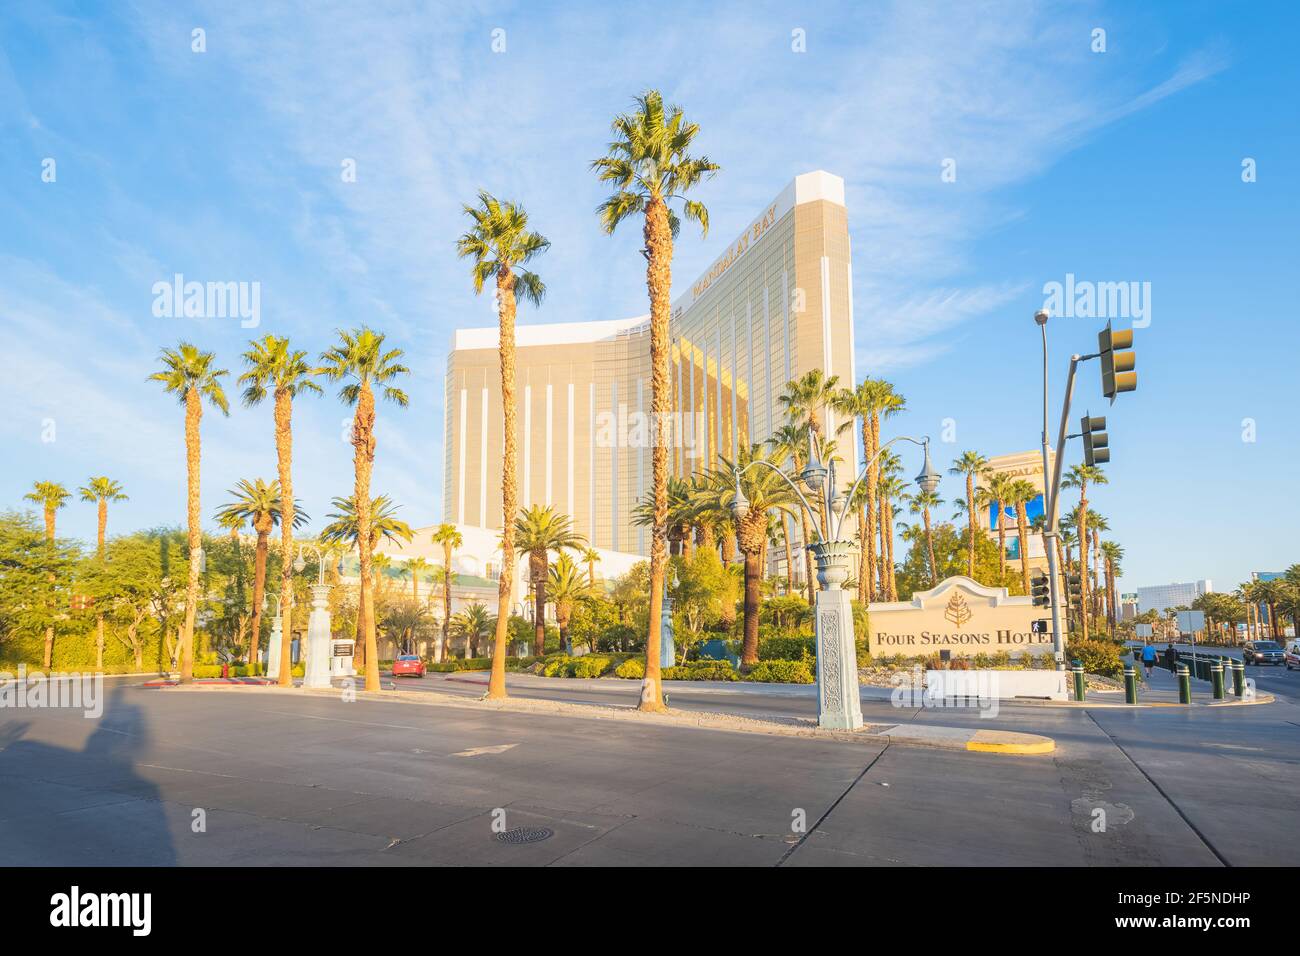 Las Vegas, Stati Uniti d'America - Ottobre 20 2019: Four Seasons Hotel e Mandalay Bay Hotel and Casino su un cielo blu giorno di sole sulla striscia a Las Vegas, Nevada, Stati Uniti. Foto Stock